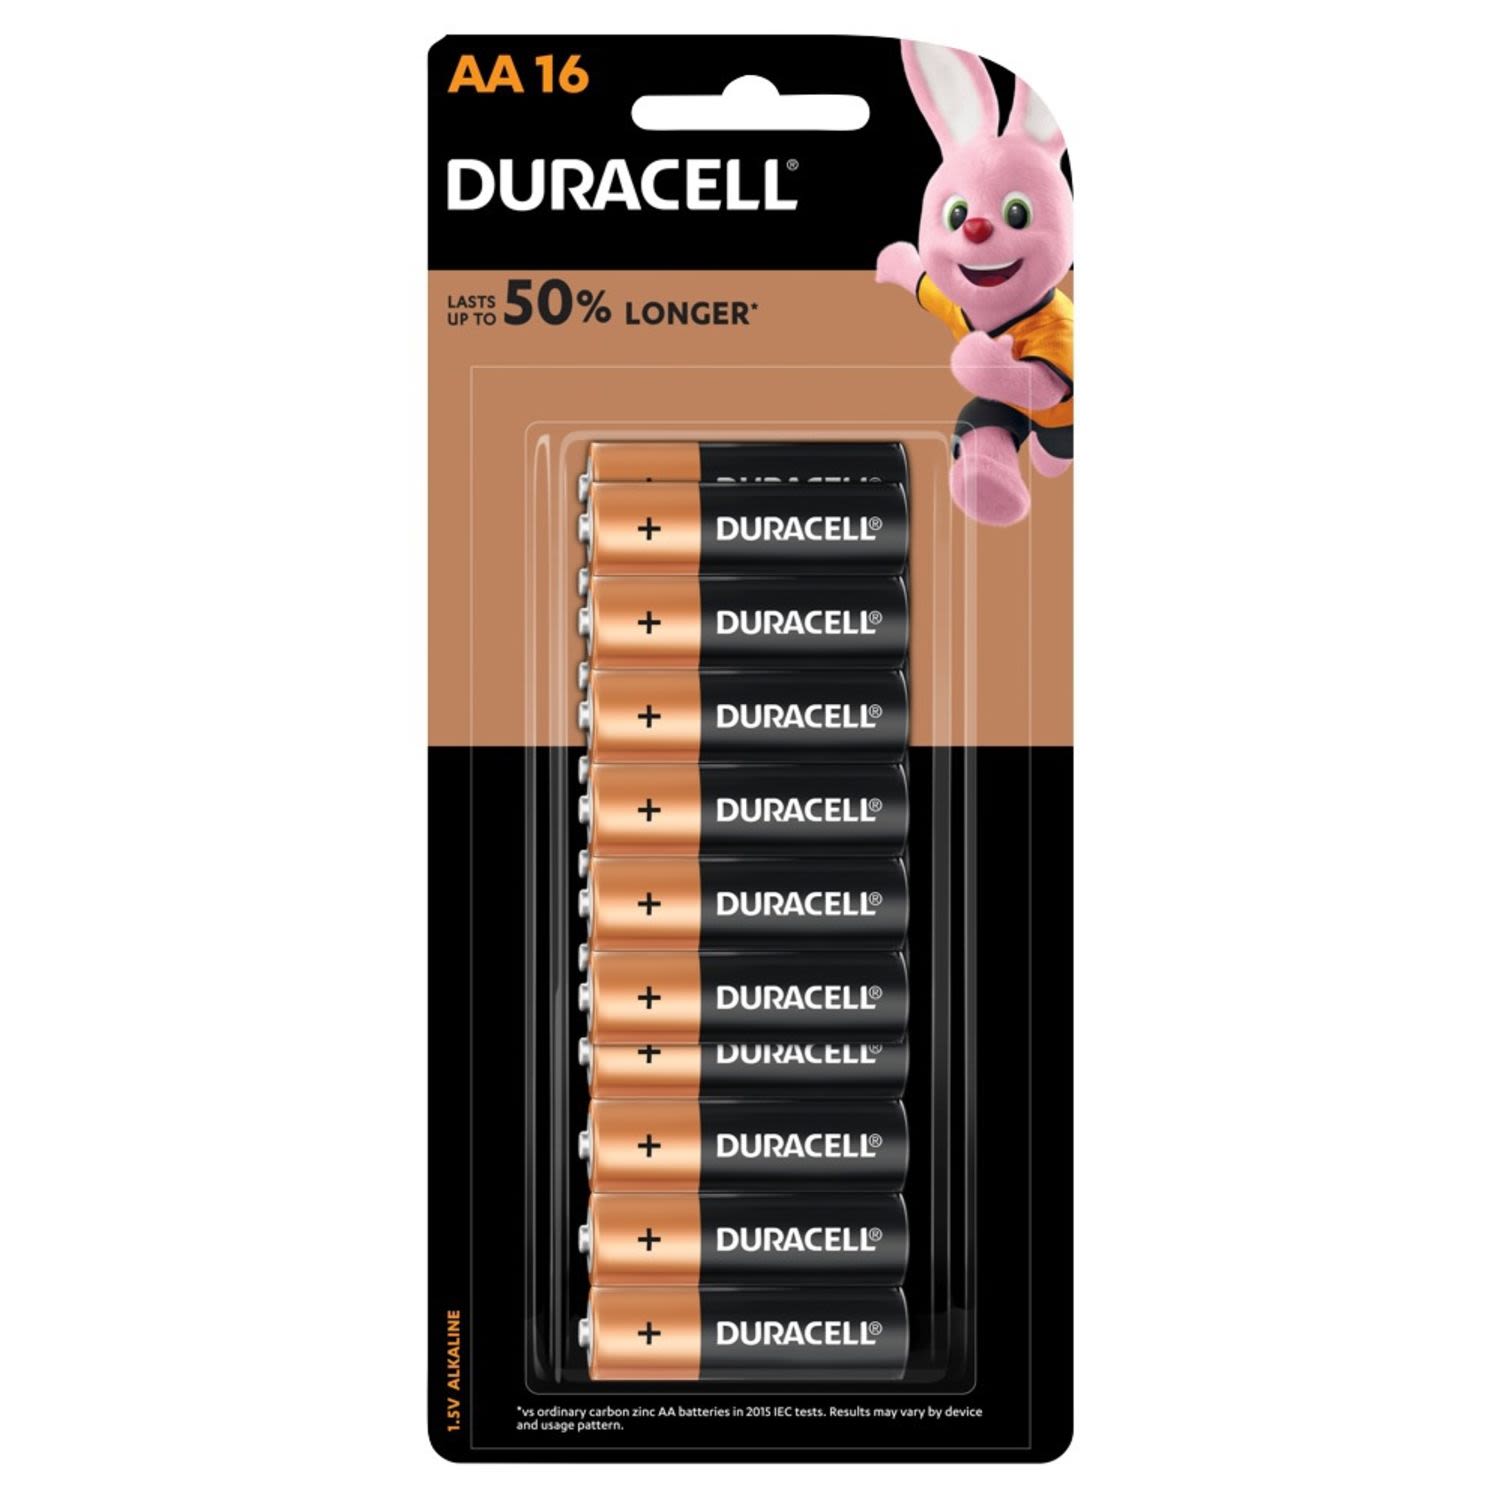 Duracell Coppertop Batteries AA, 16 Each